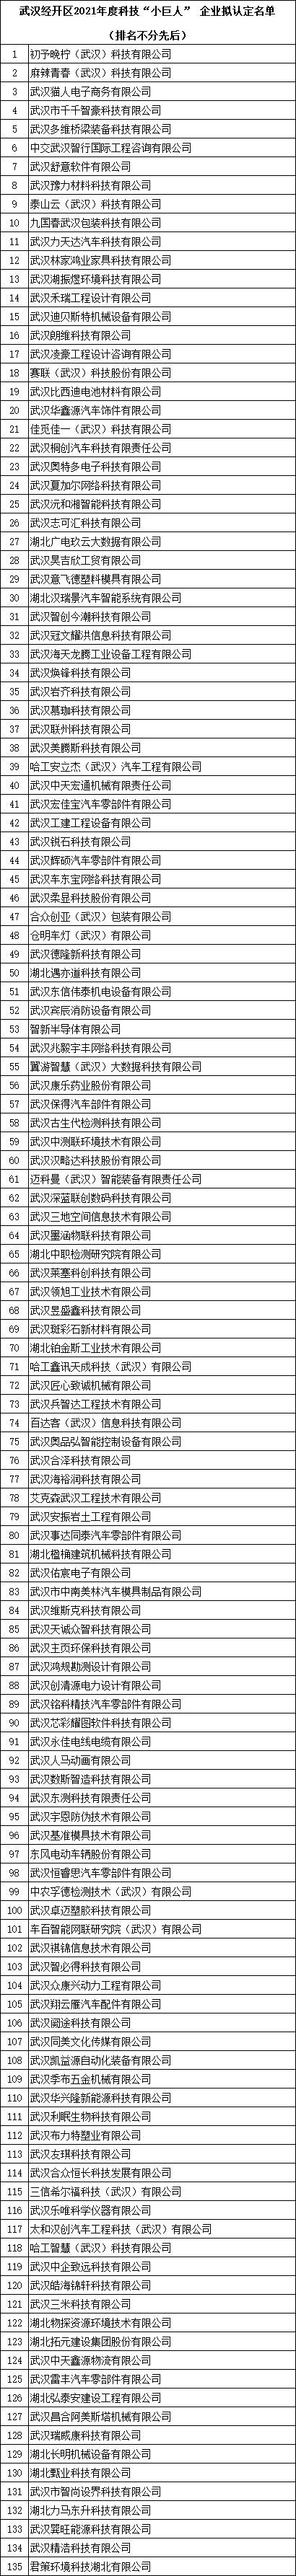 武汉市科技小巨人企业名单